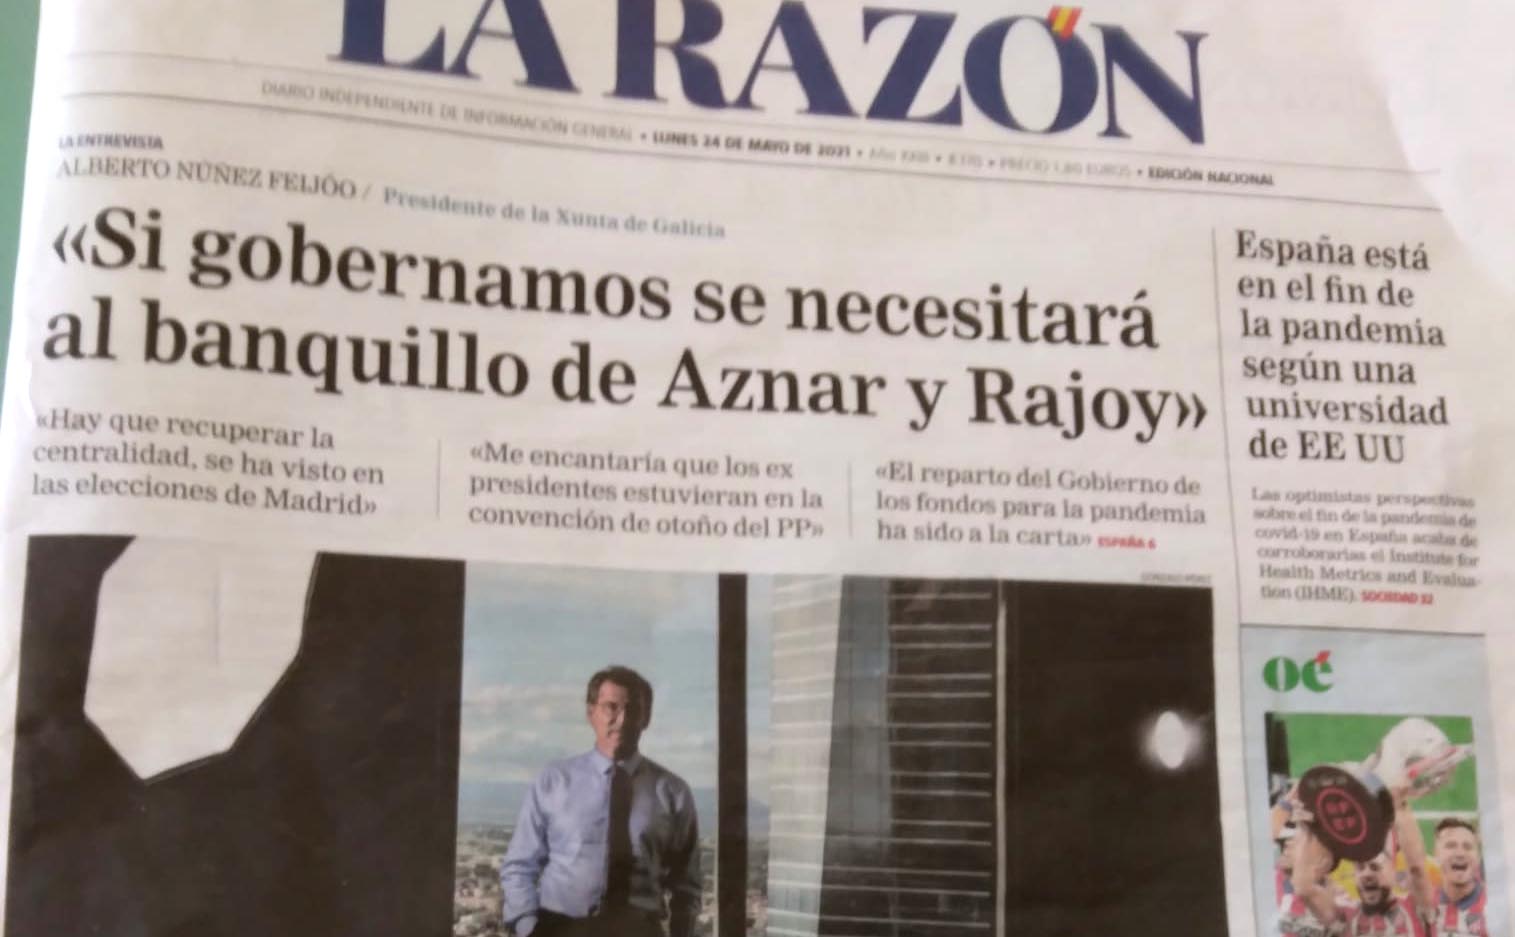 Si gobernamos se necesitará al banquillo de Aznar y Rajoy